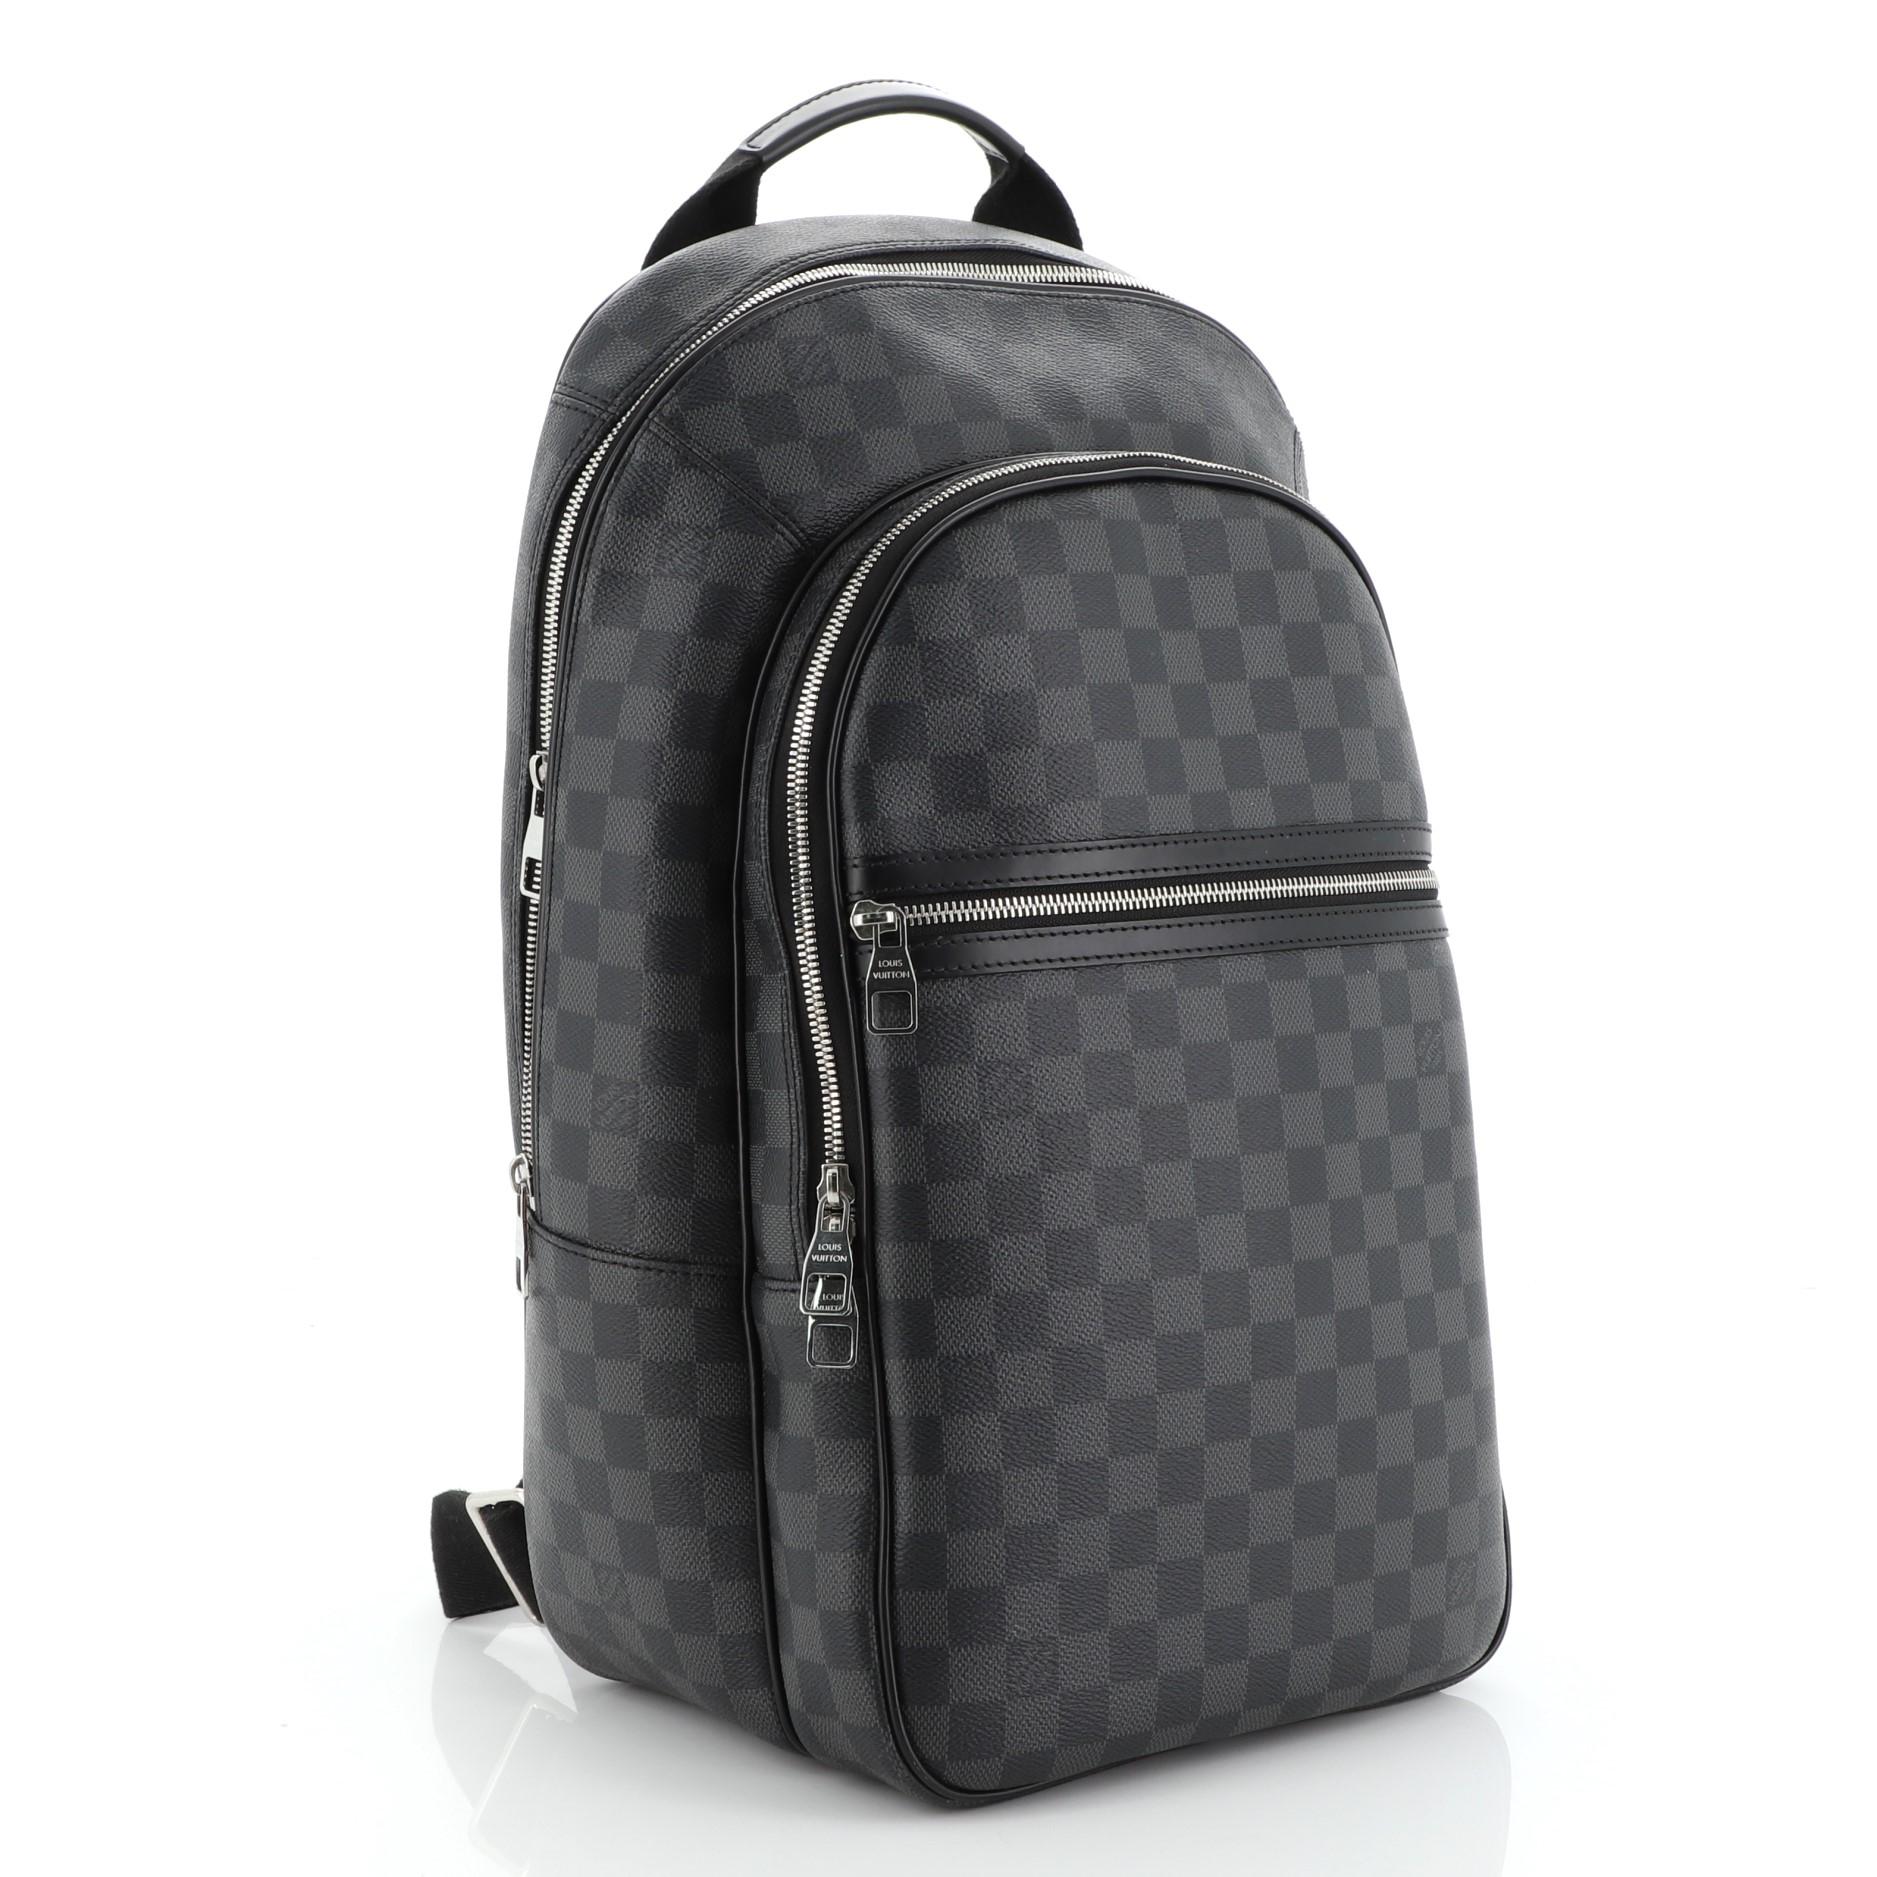 lv bape backpack